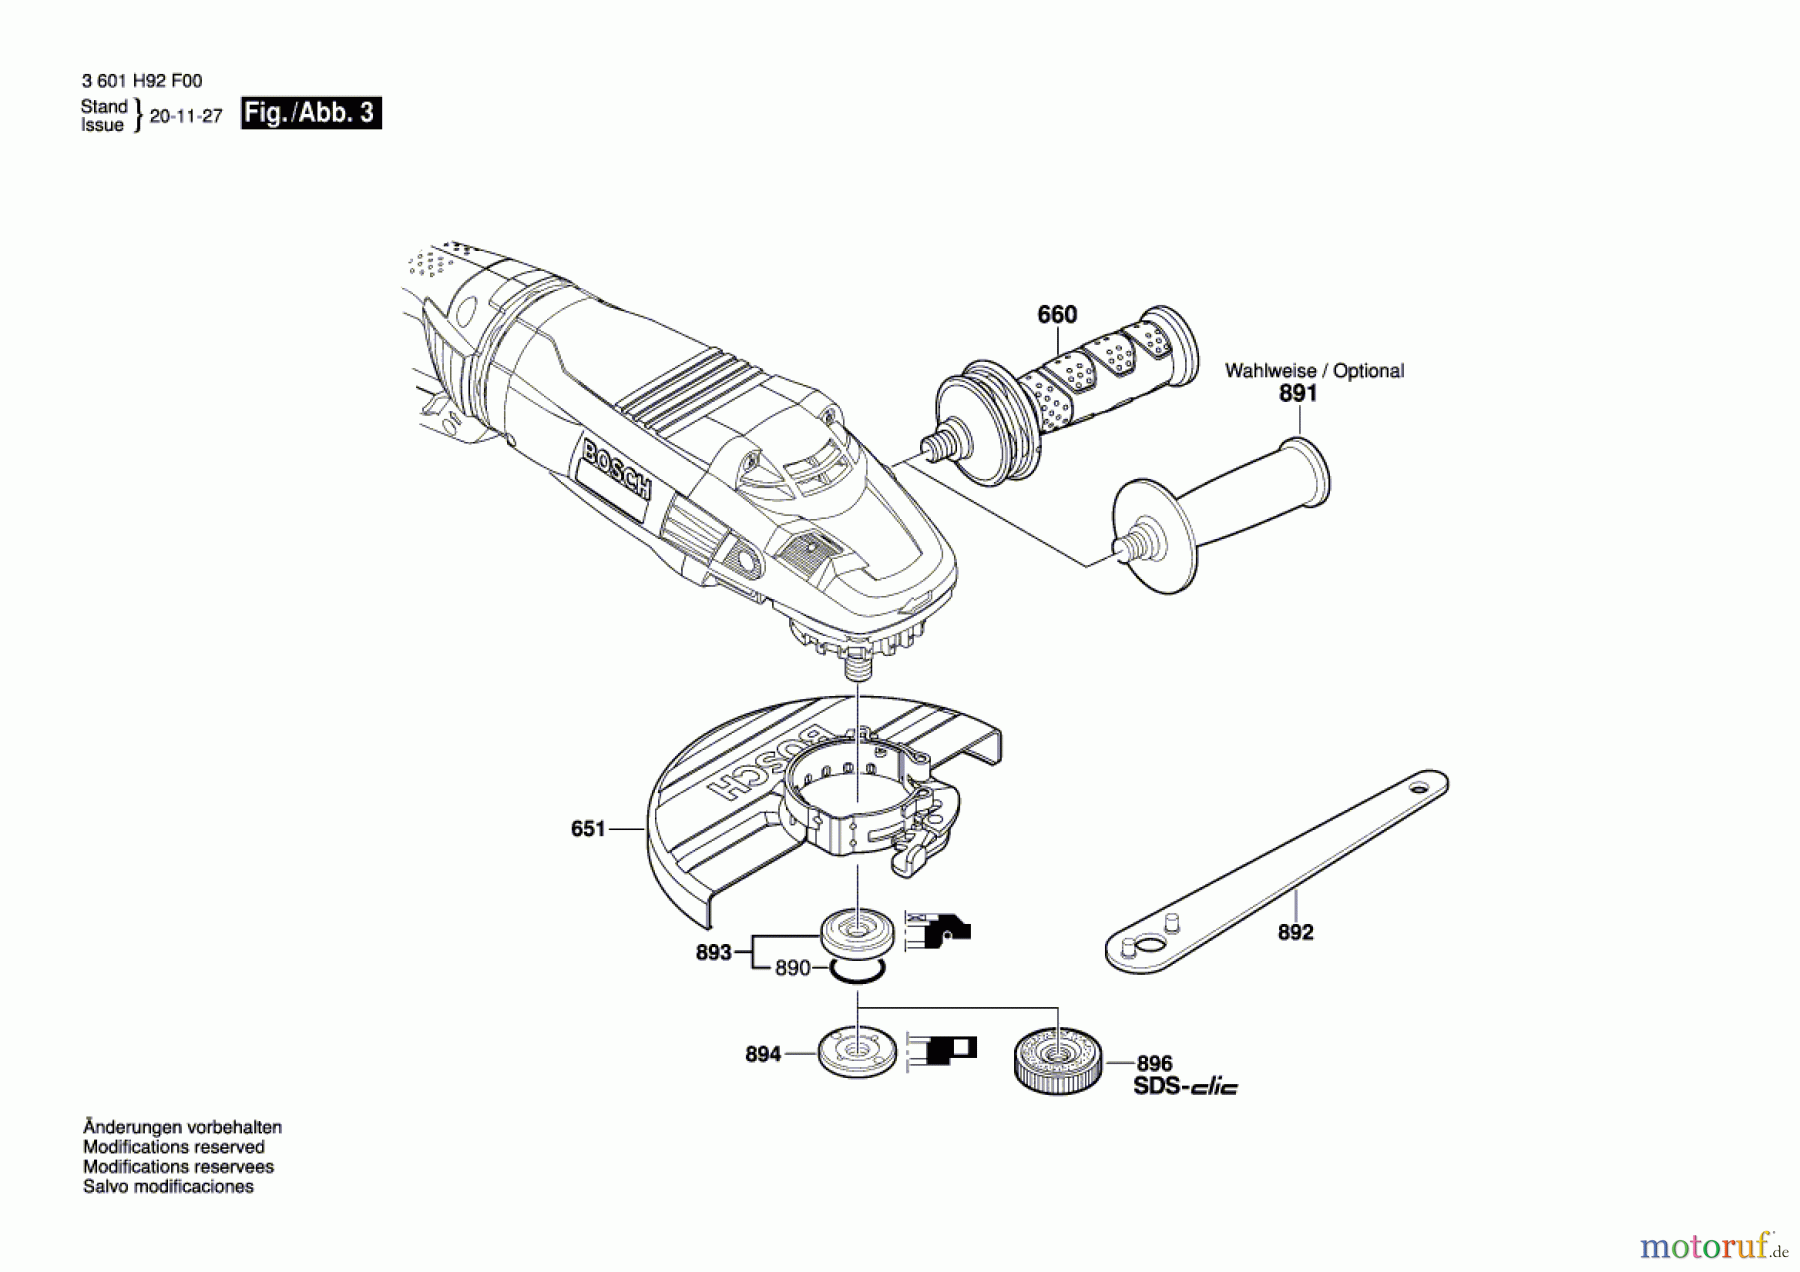  Bosch Werkzeug Winkelschleifer GWS 26-180 LVI Seite 3